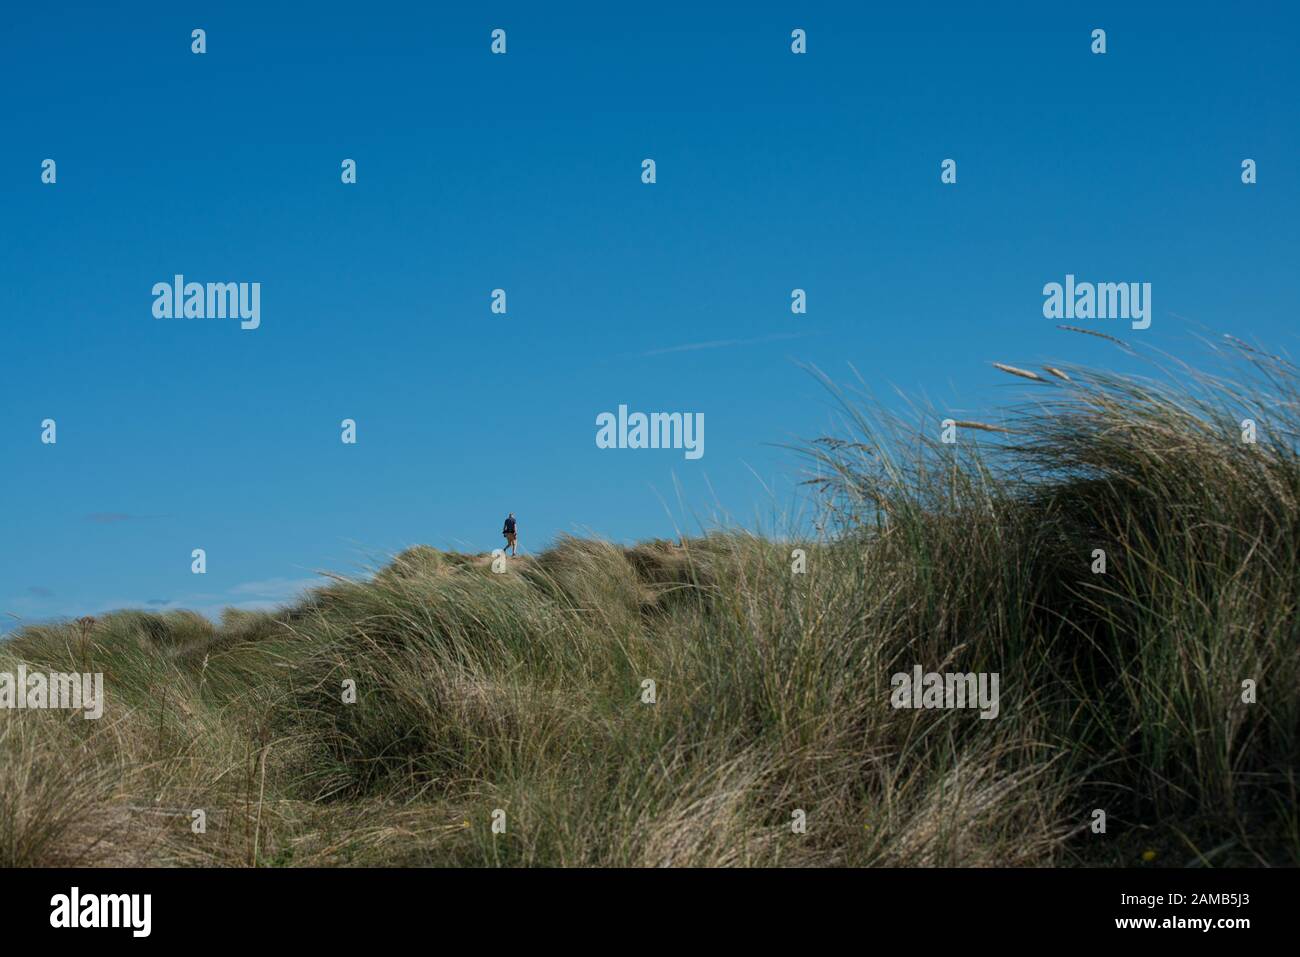 Vue basse de la figure humaine simple distante sur les dunes de sable avec une figure apparaissant petite comme dans la perspective forcée et le premier plan de l'herbe de marram Banque D'Images